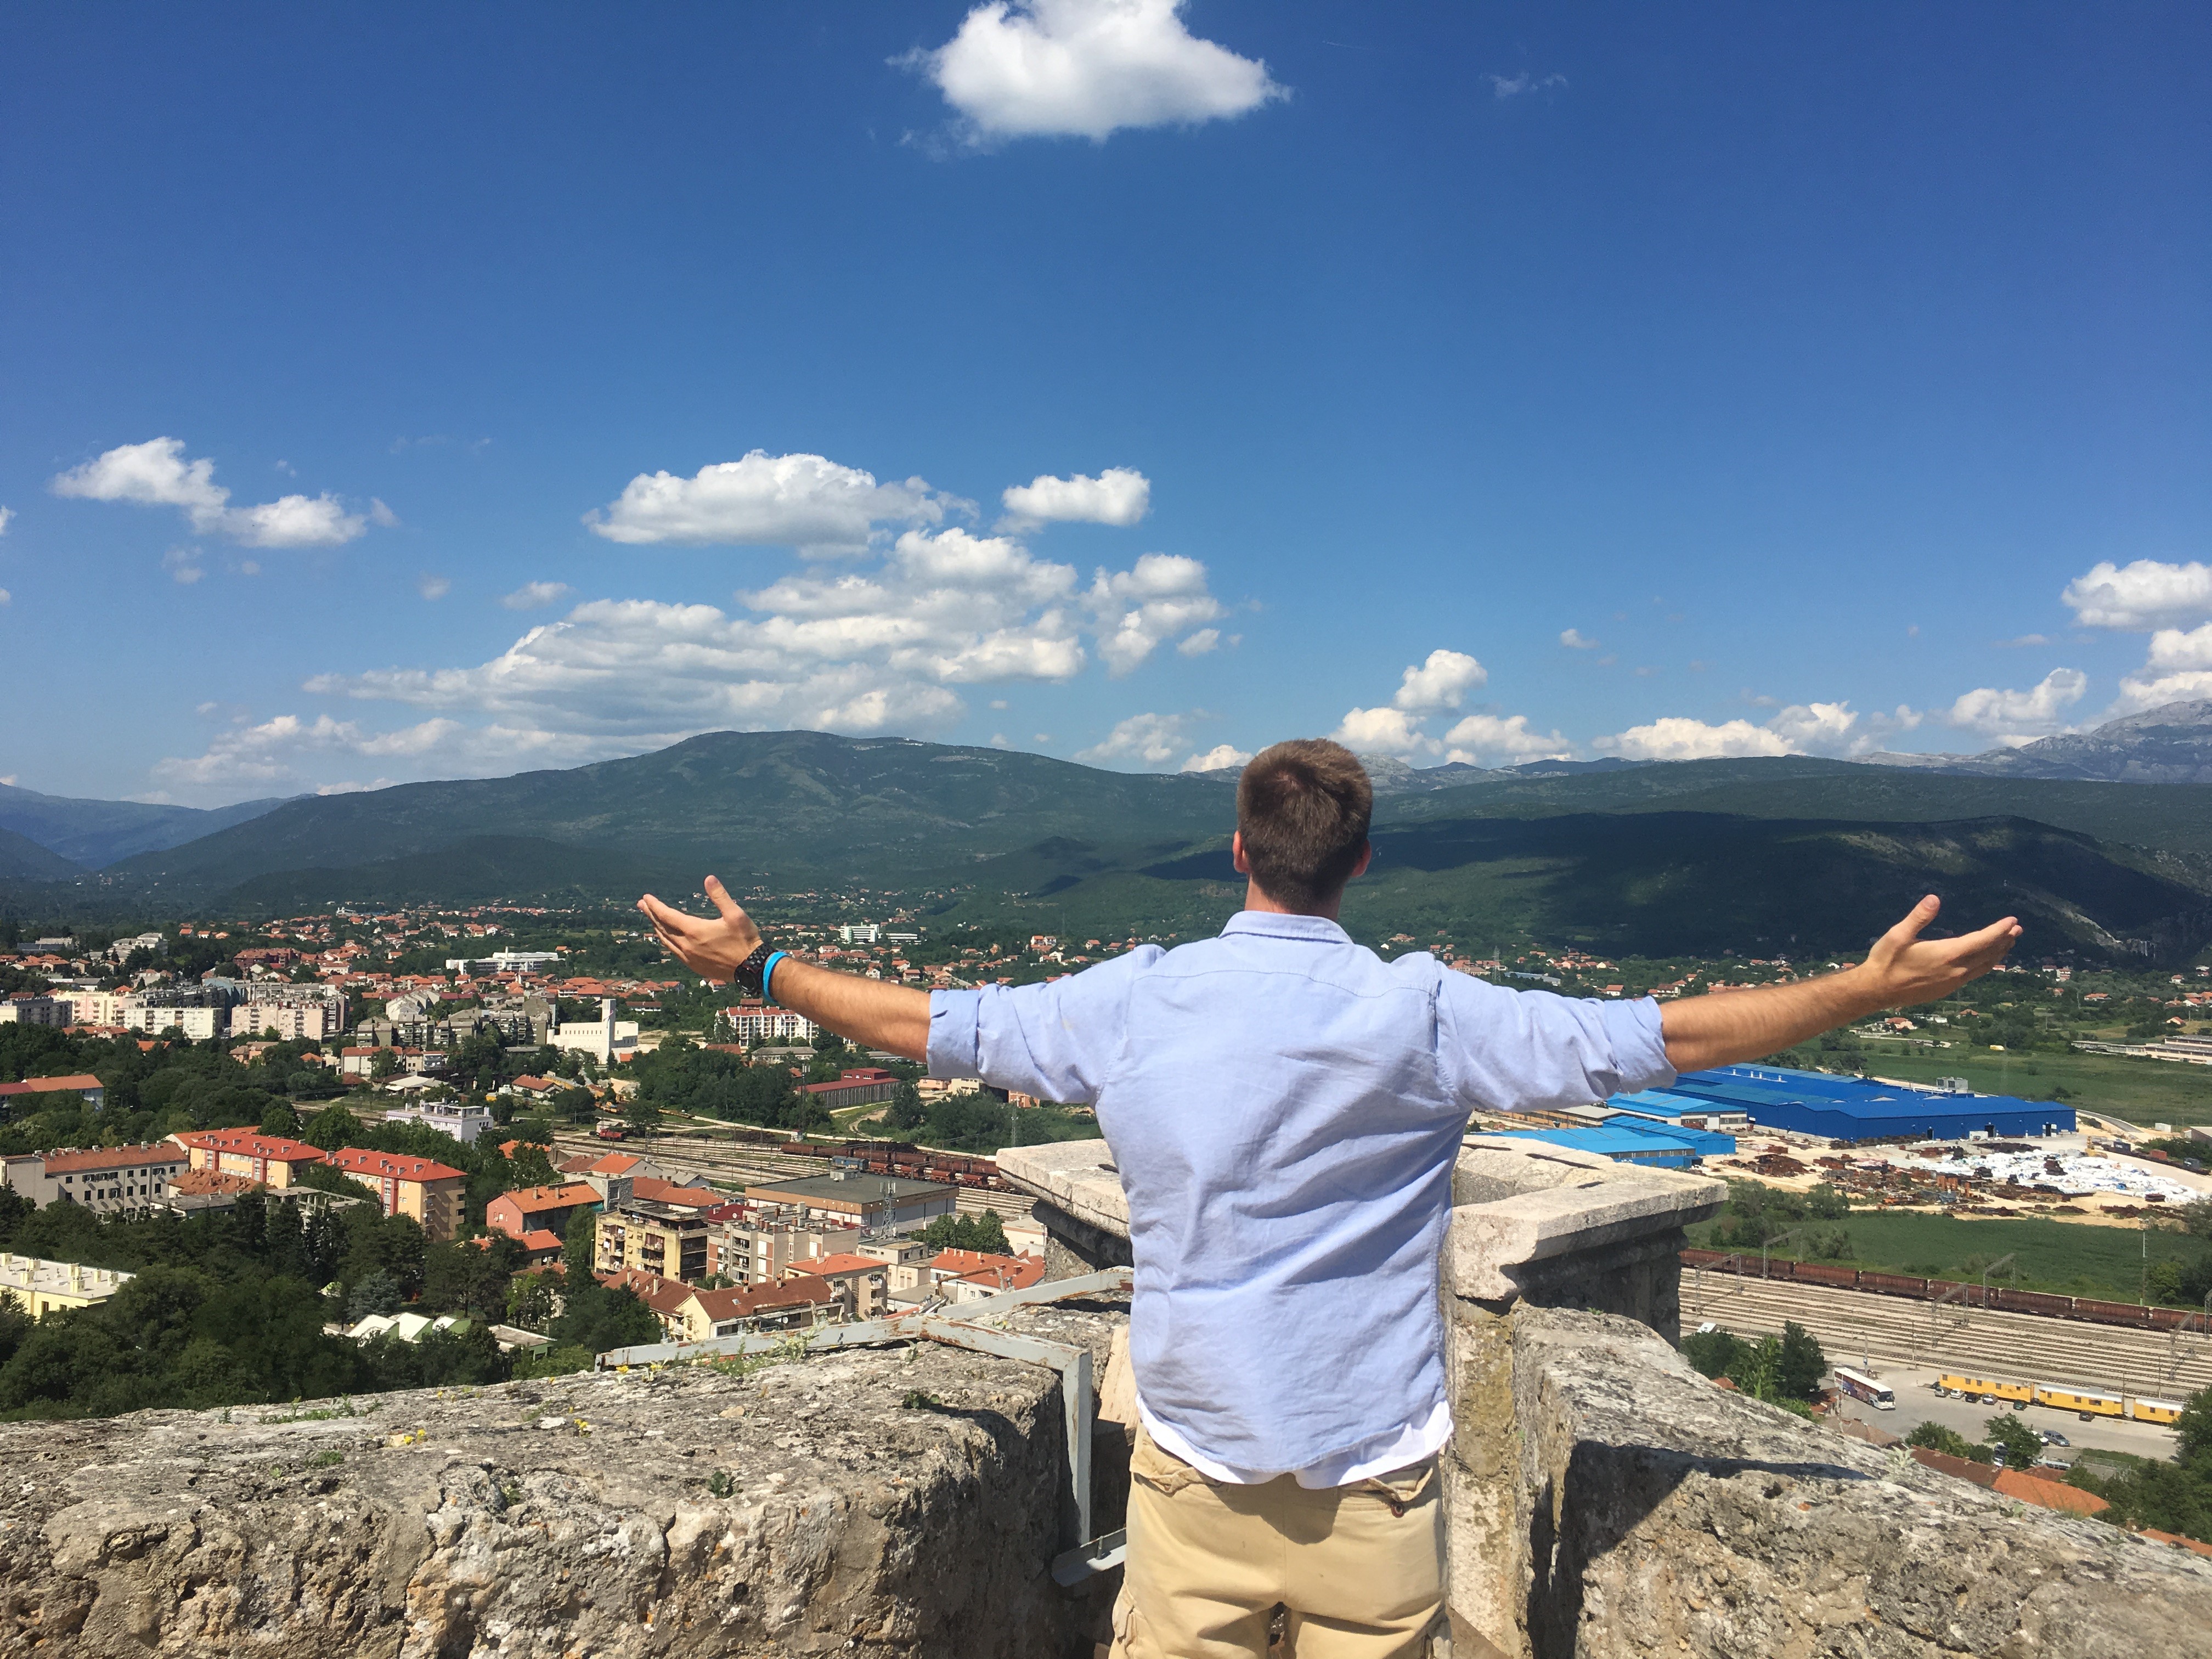 Nicholas experiencing Croatia